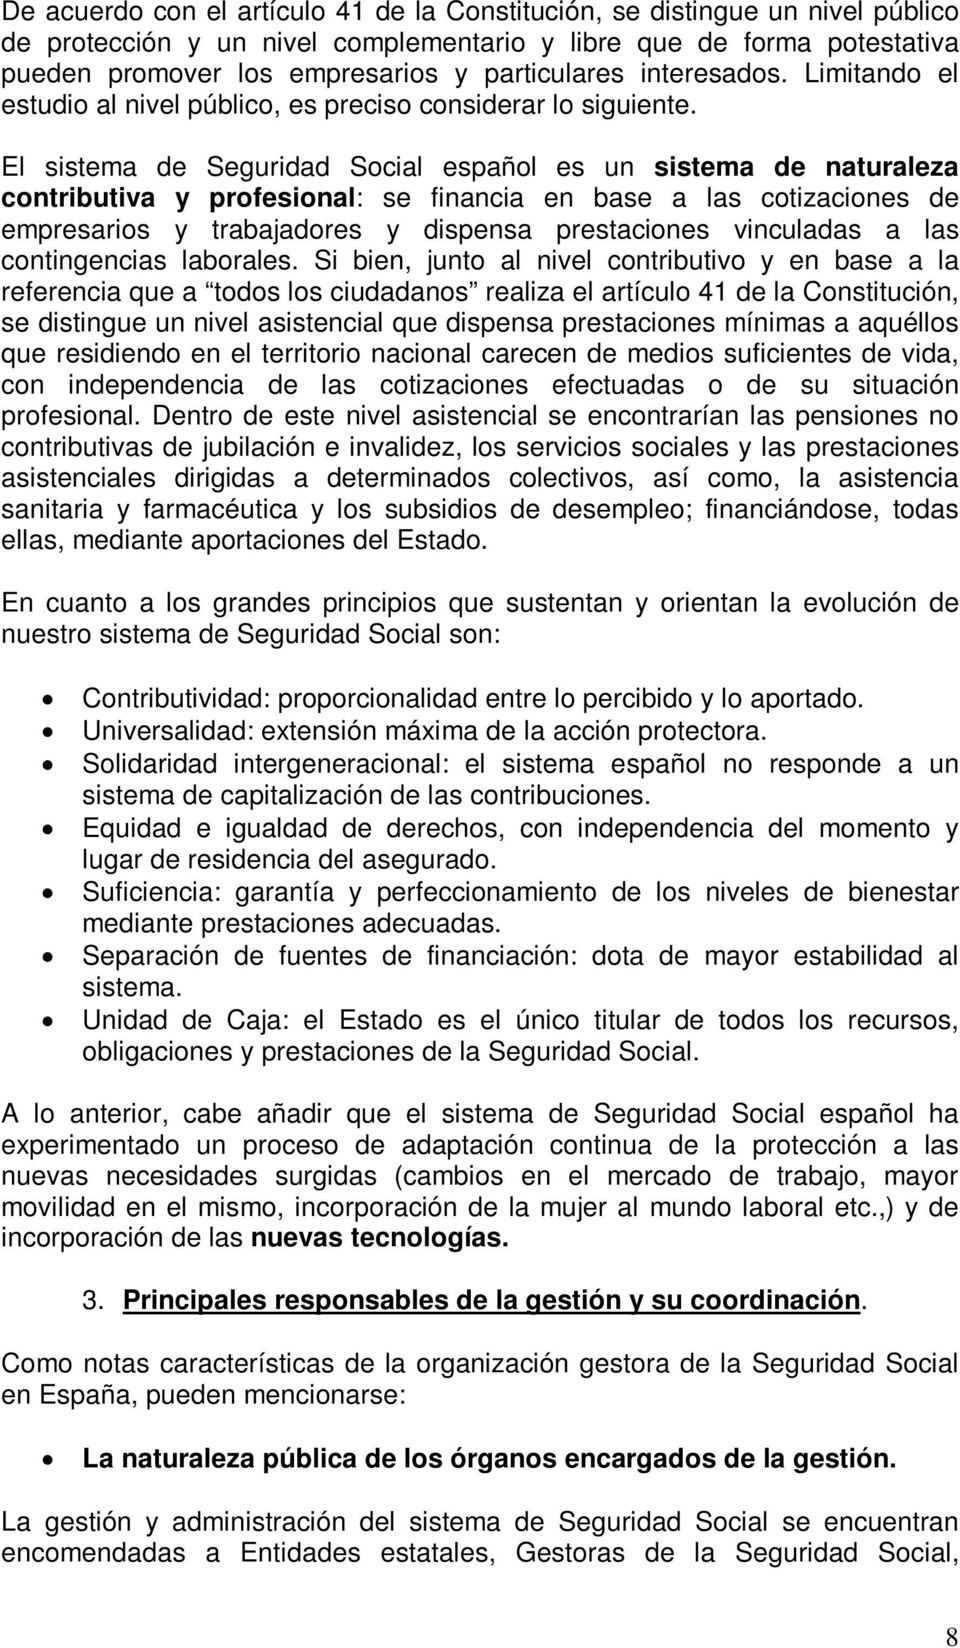 El sistema de Seguridad Social español es un sistema de naturaleza contributiva y profesional: se financia en base a las cotizaciones de empresarios y trabajadores y dispensa prestaciones vinculadas